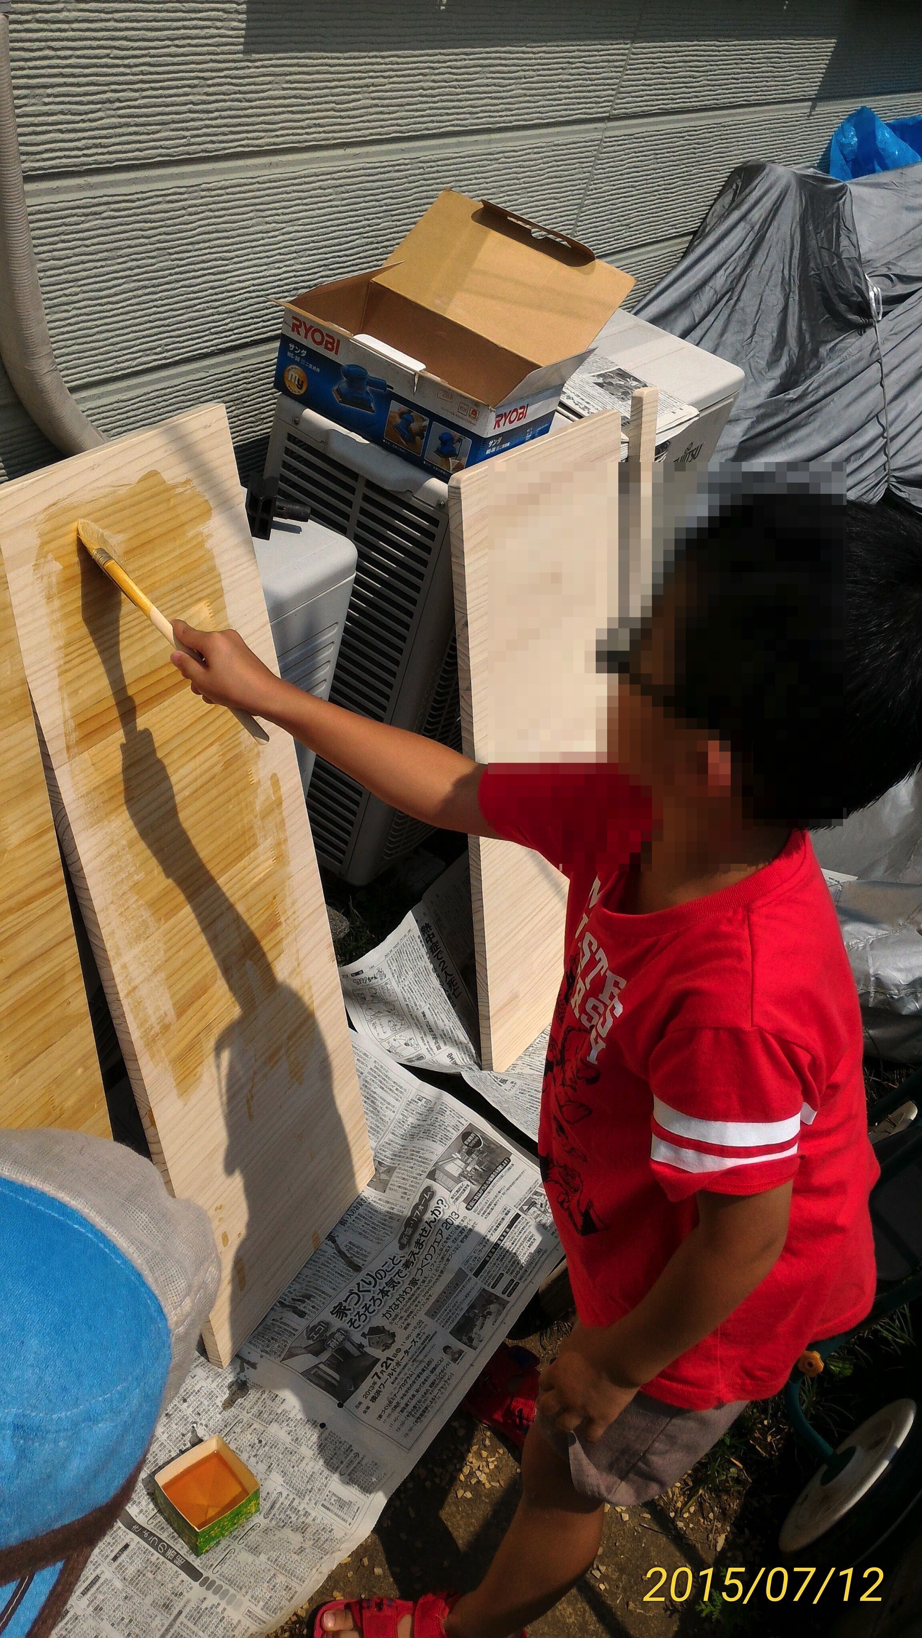 【DIY：キッチンに折りたたみテーブルを作る】②　角落とし→ヤスリがけ→ニス塗り